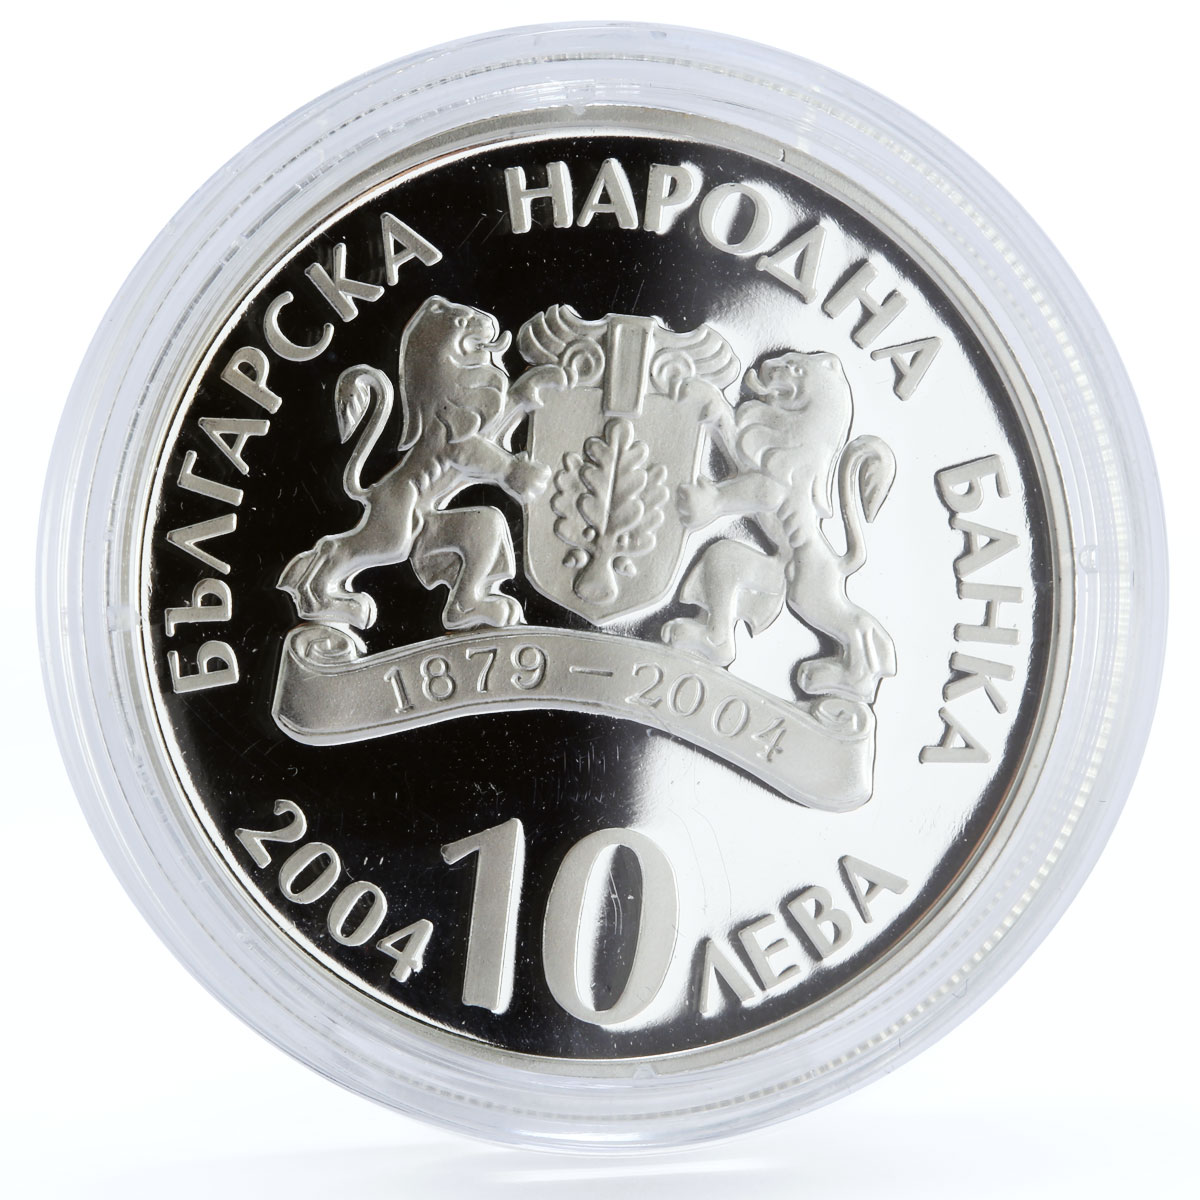 Bulgaria 10 leva Centennial of the Ivan Vazov National Theatre silver coin 2004